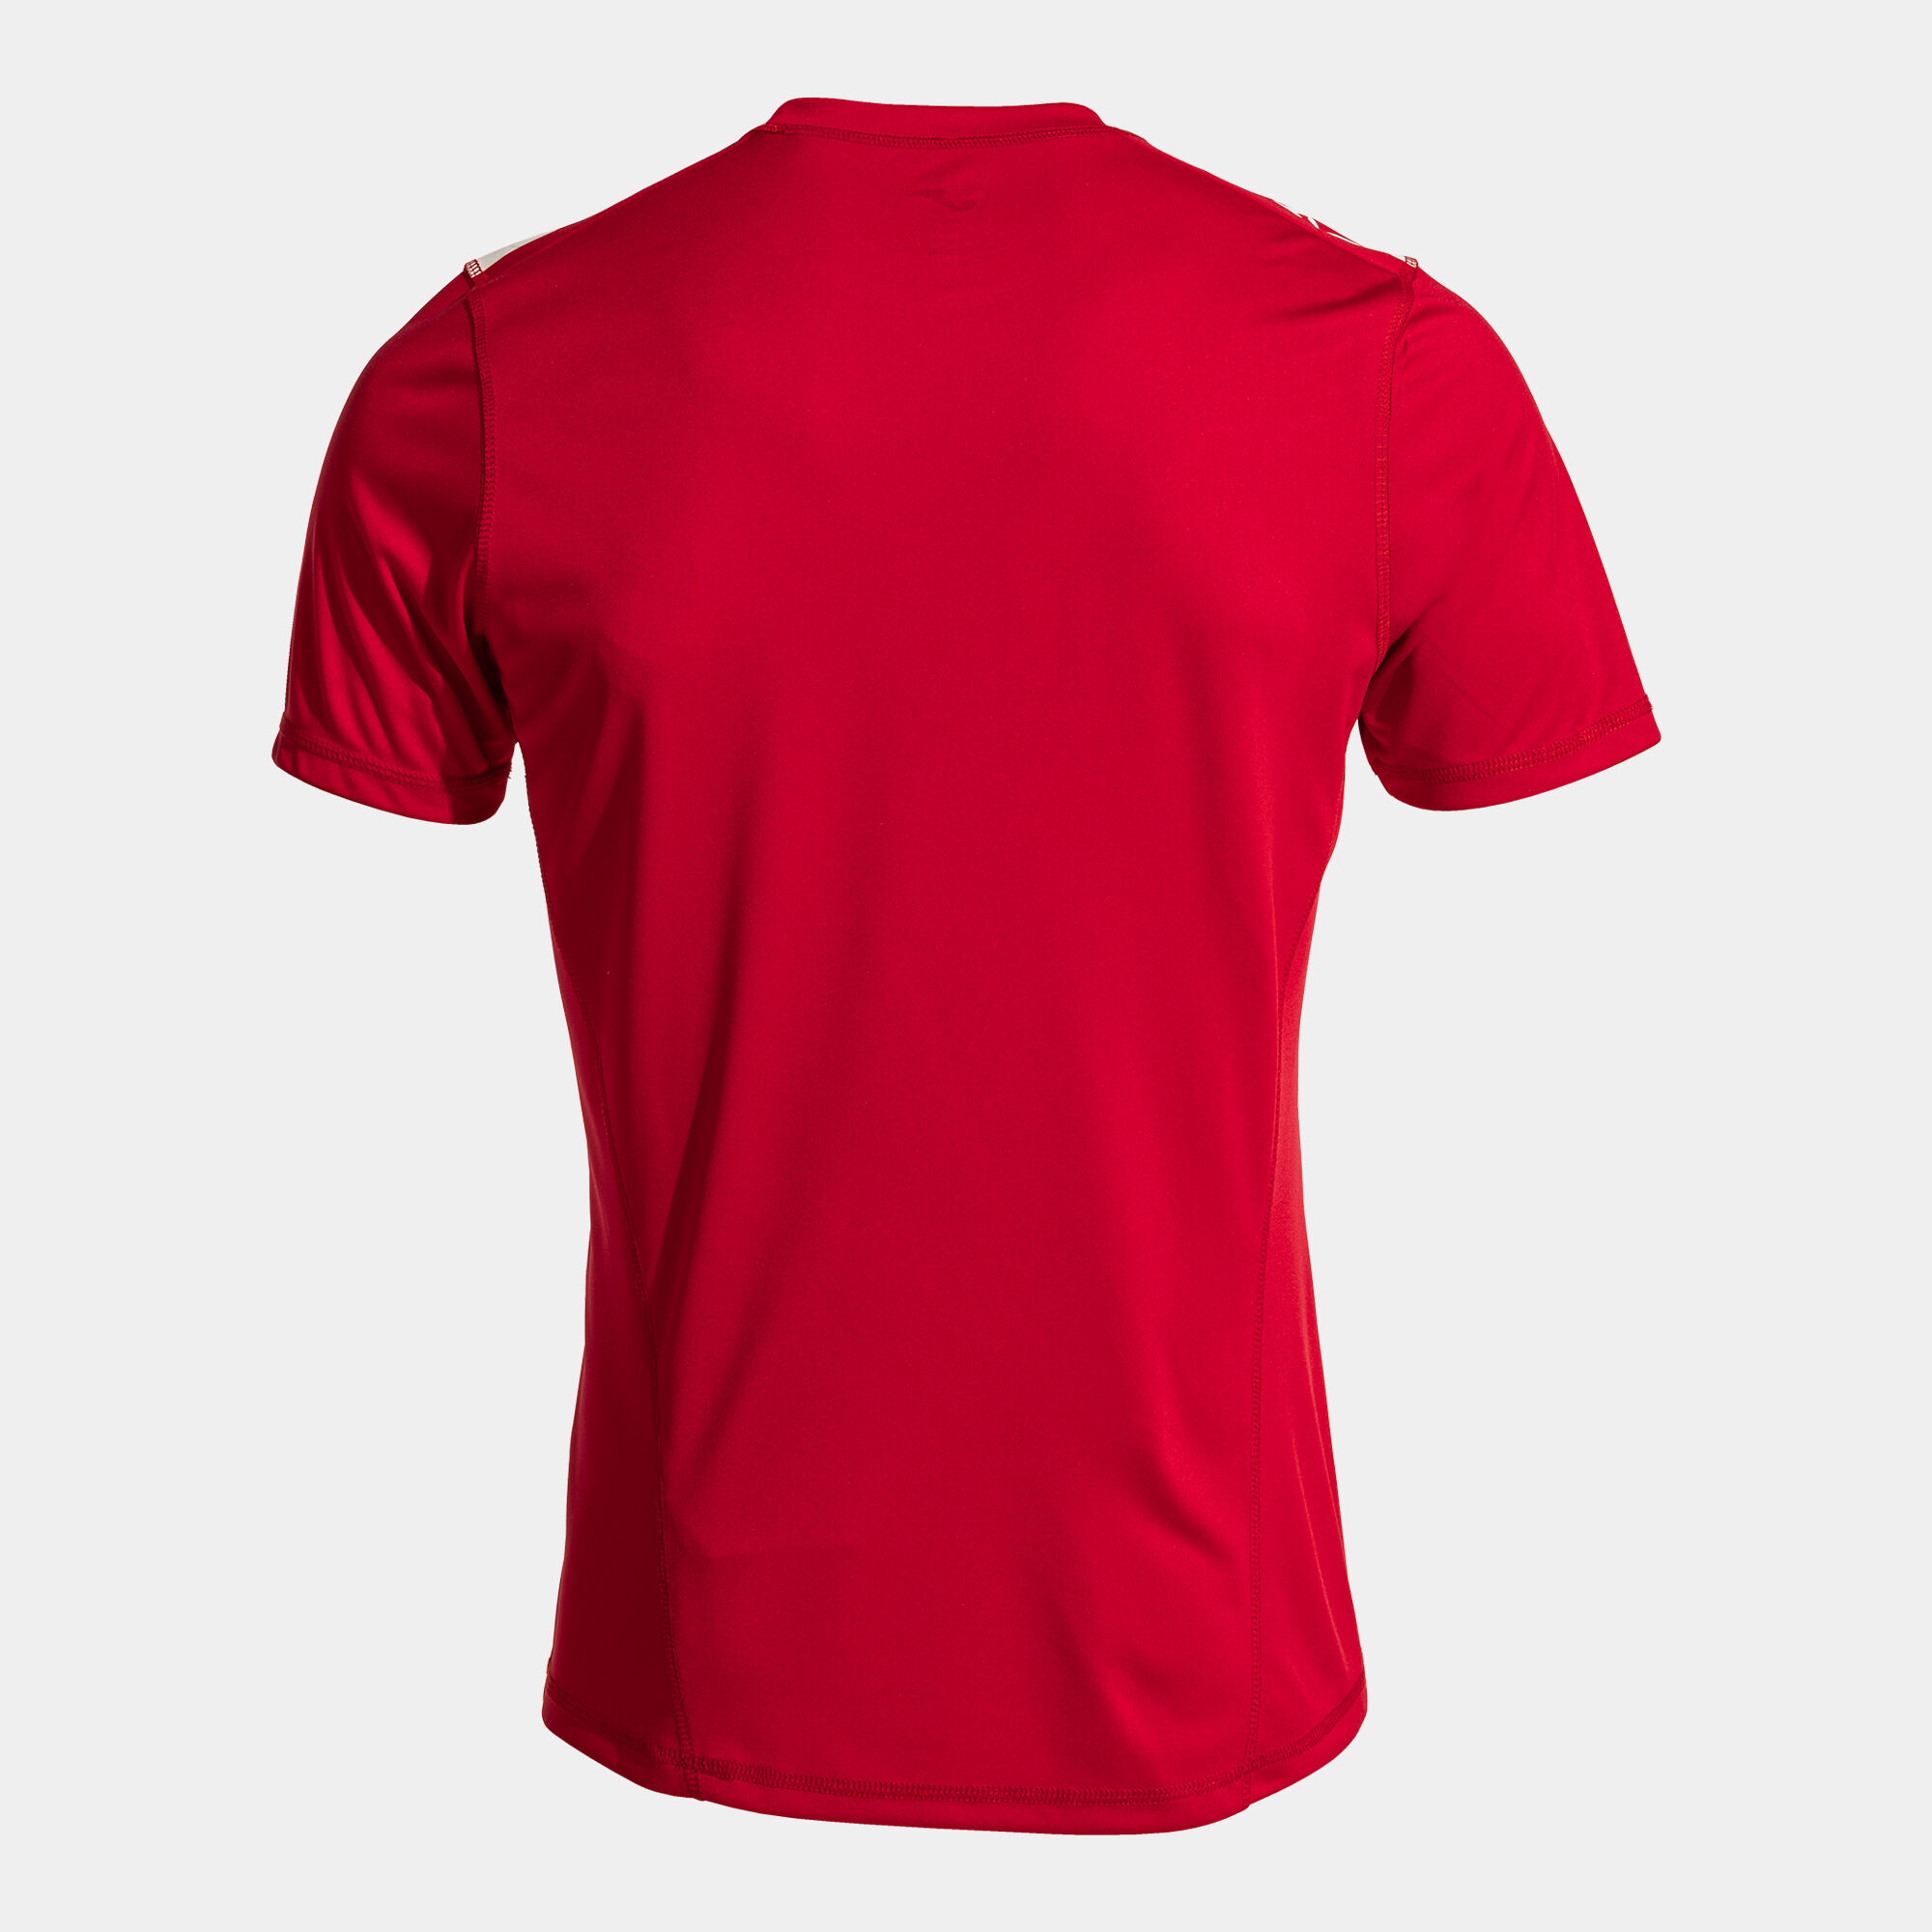 Camiseta manga corta hombre Olimpiada handball rojo